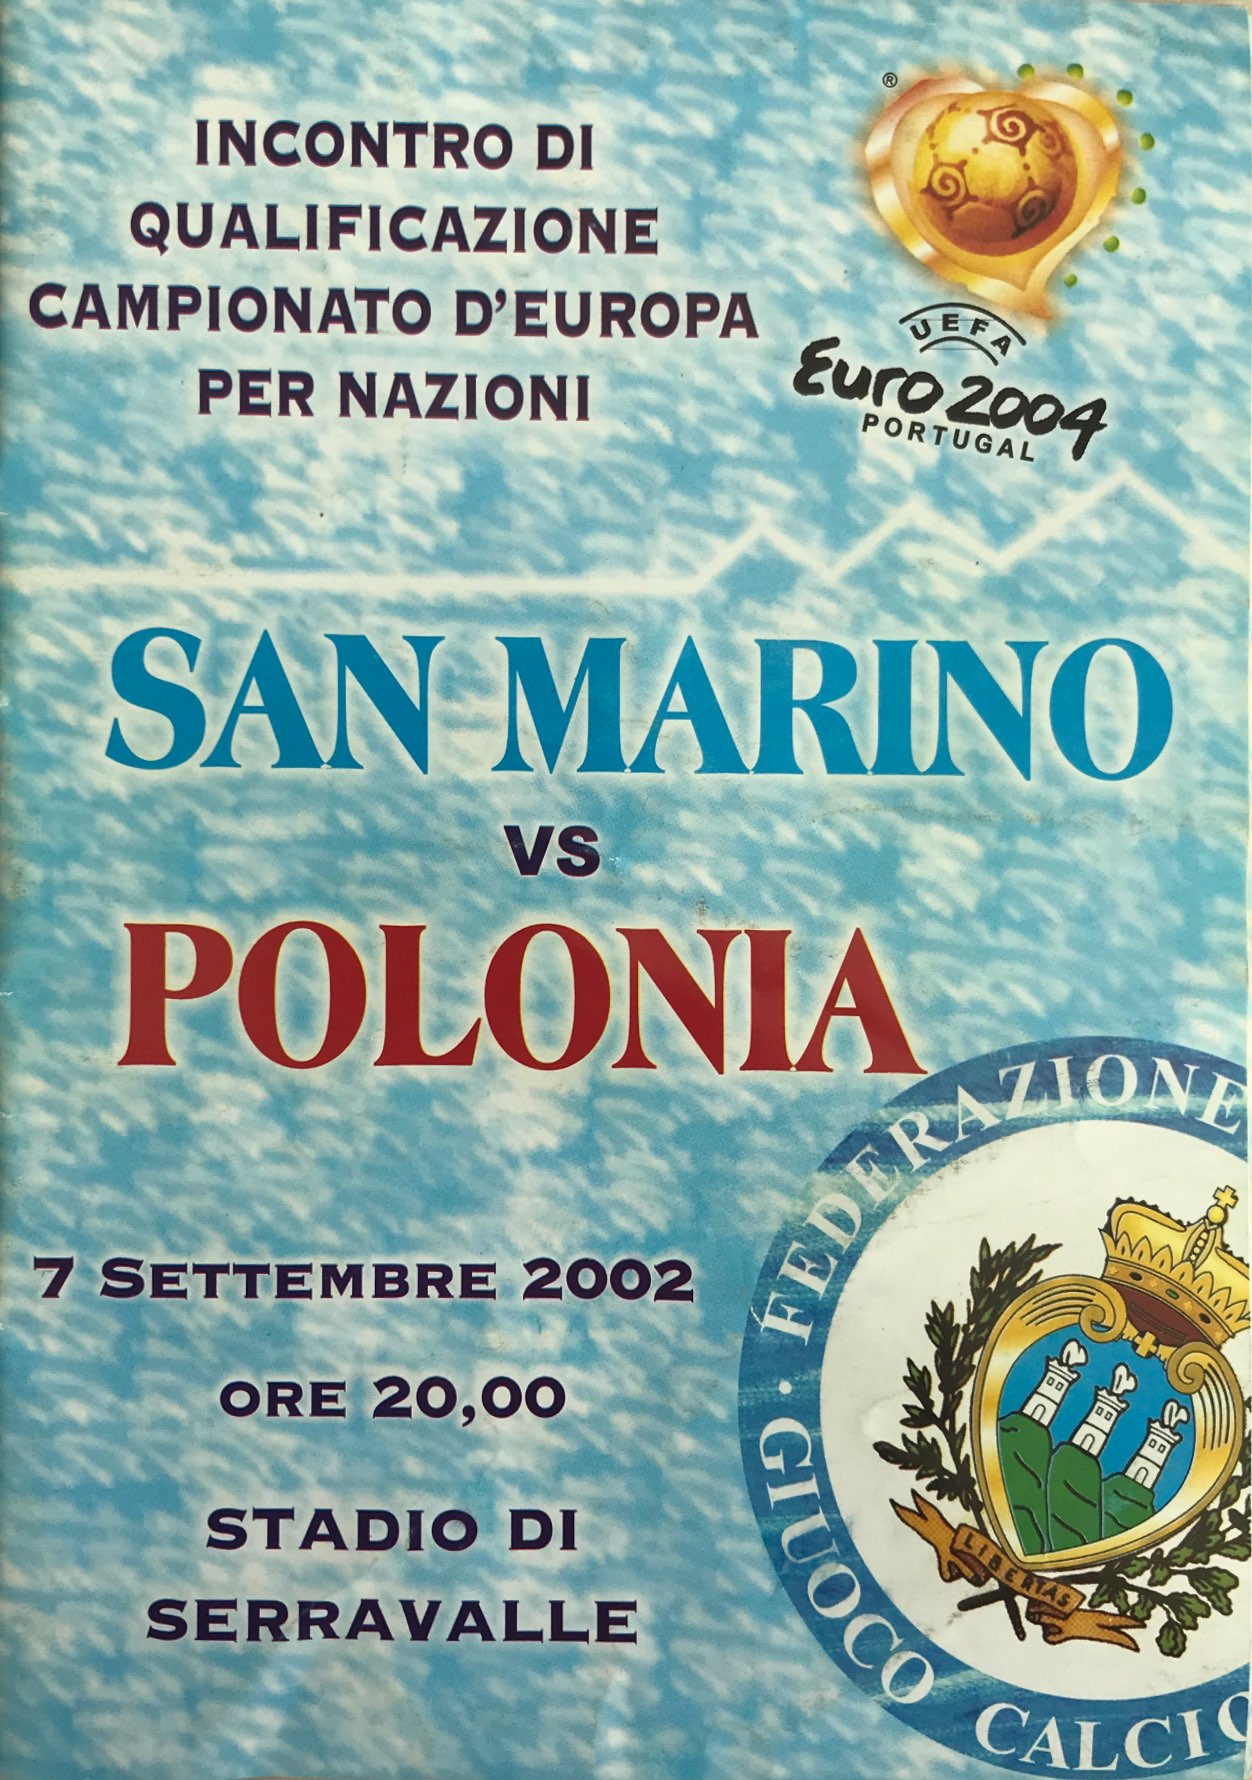 Program meczowy San Marino - Polska 0:2 (07.09.2002).